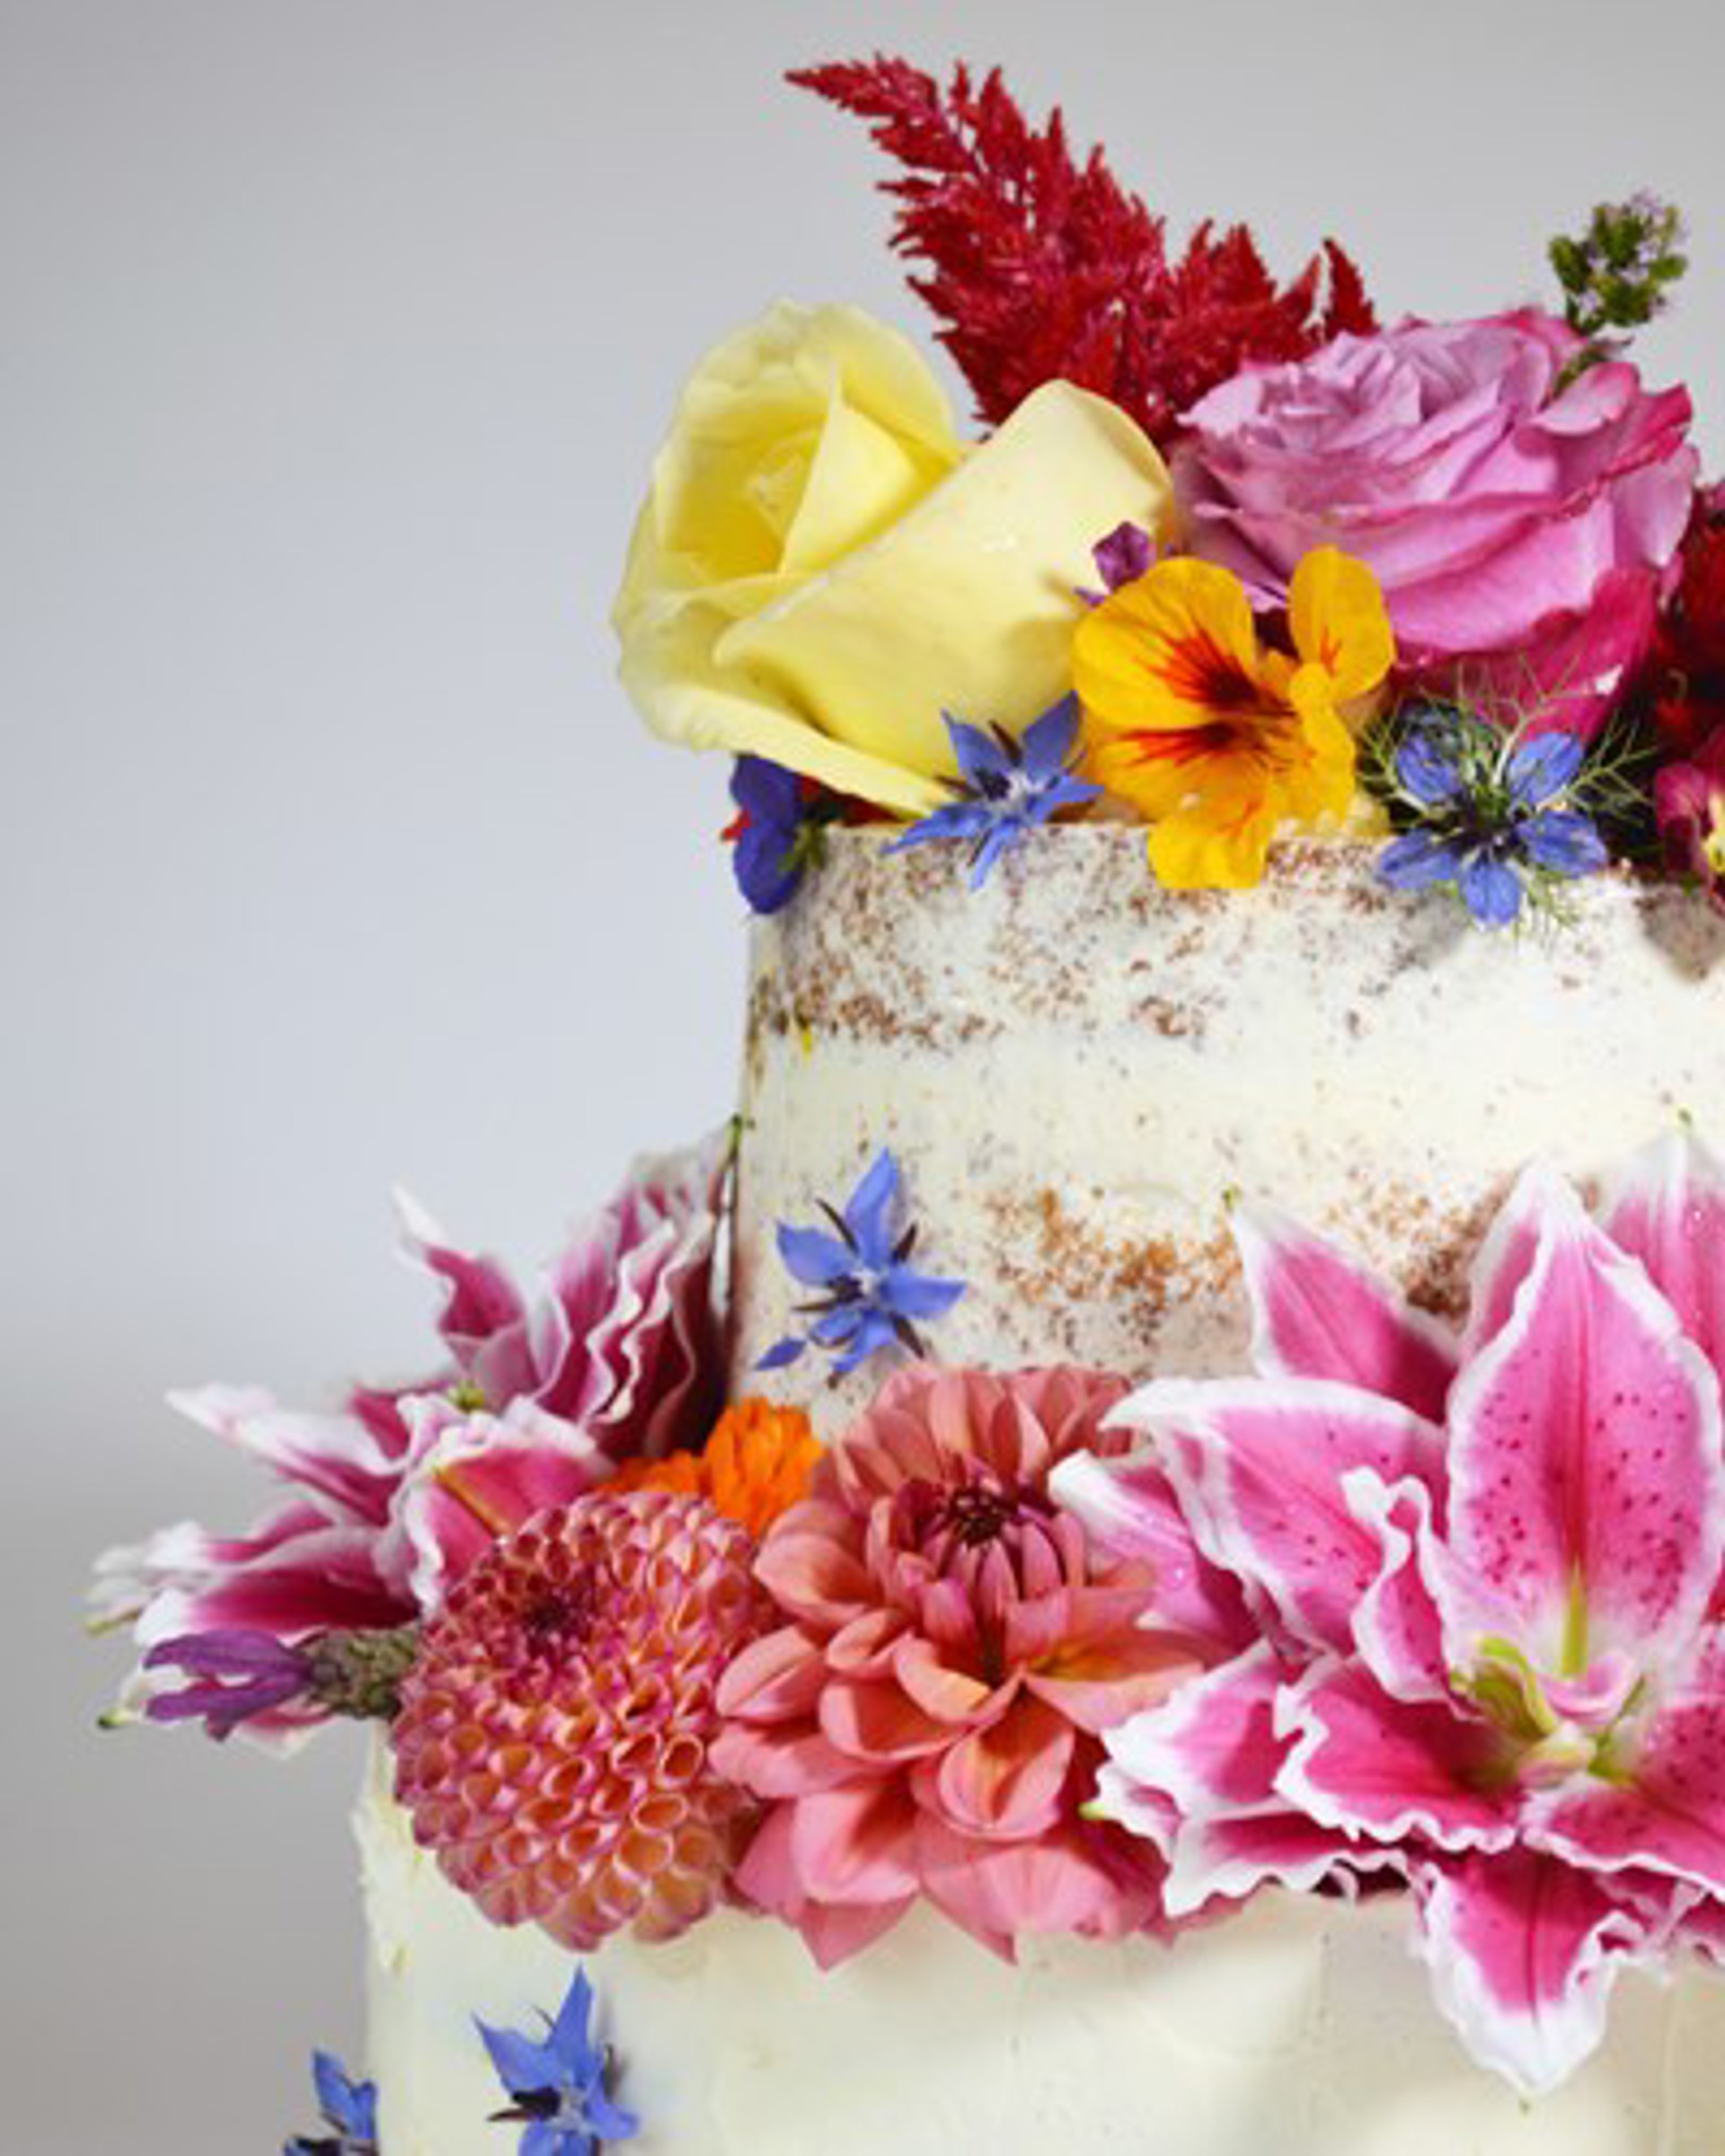 Background image - Northern Lights Cakery Wedding Cake